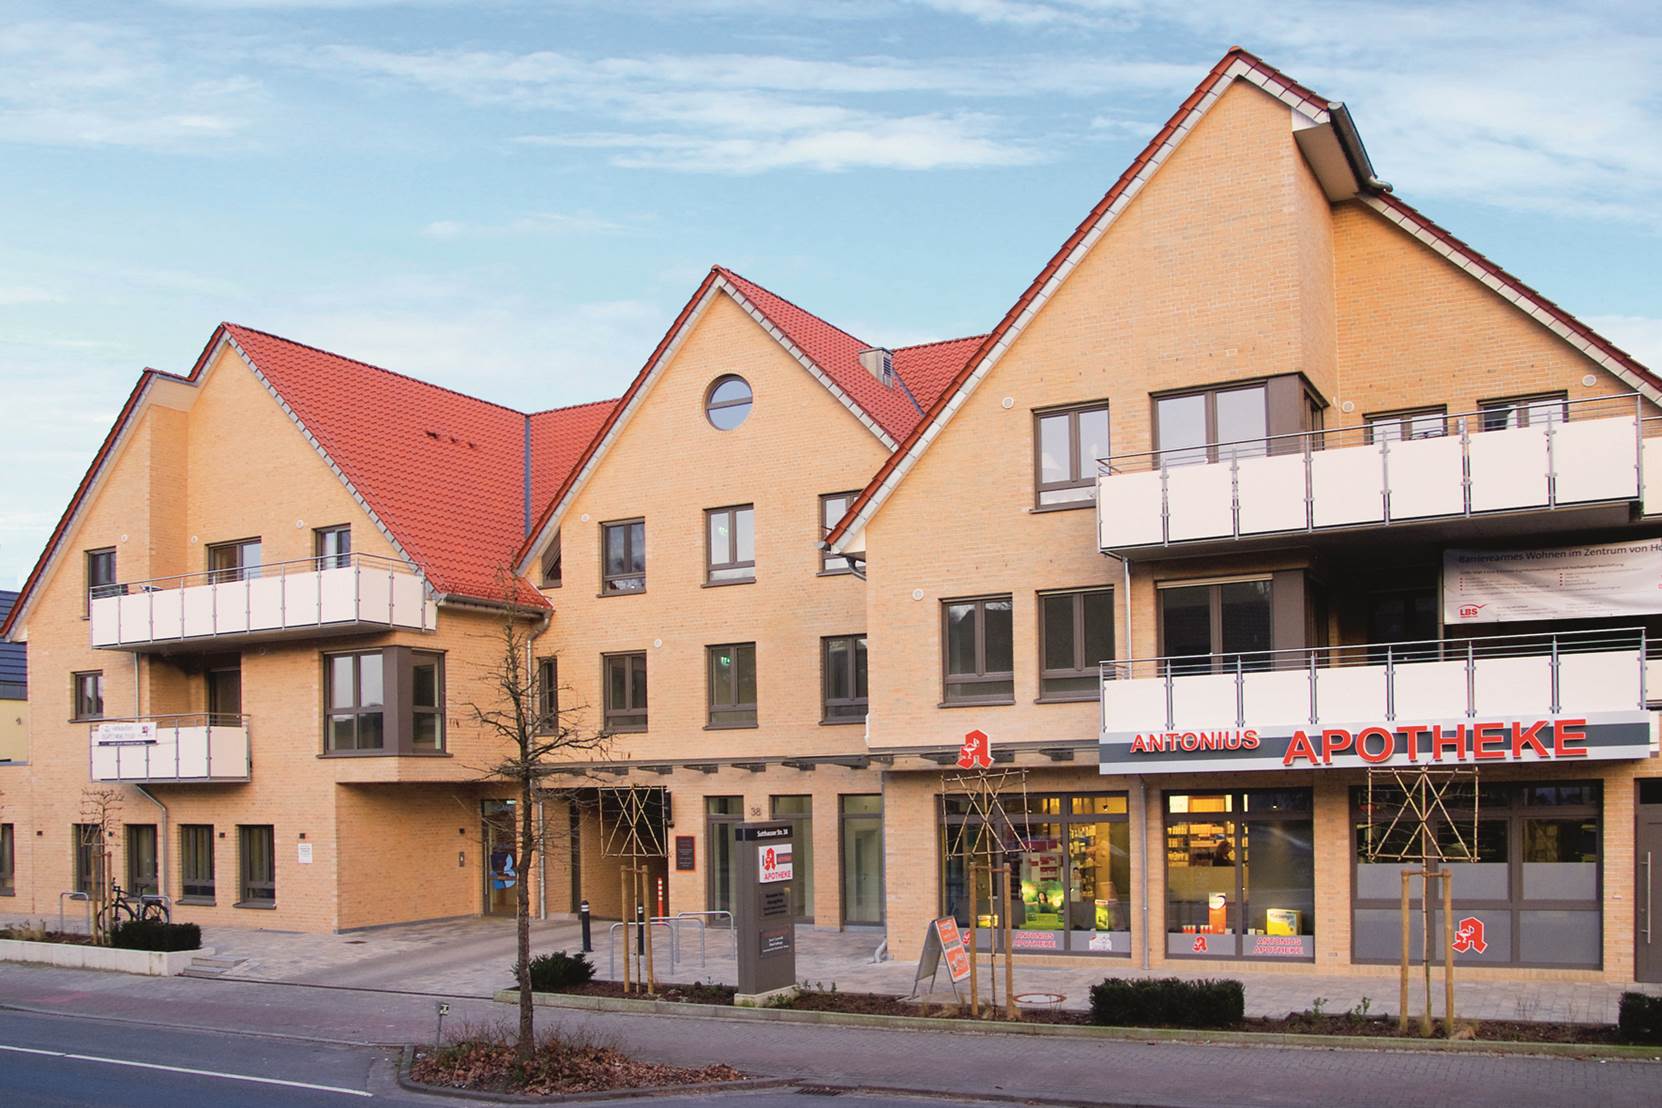 Planungsbüro Kulgemeyer - Architekt Osnabrück